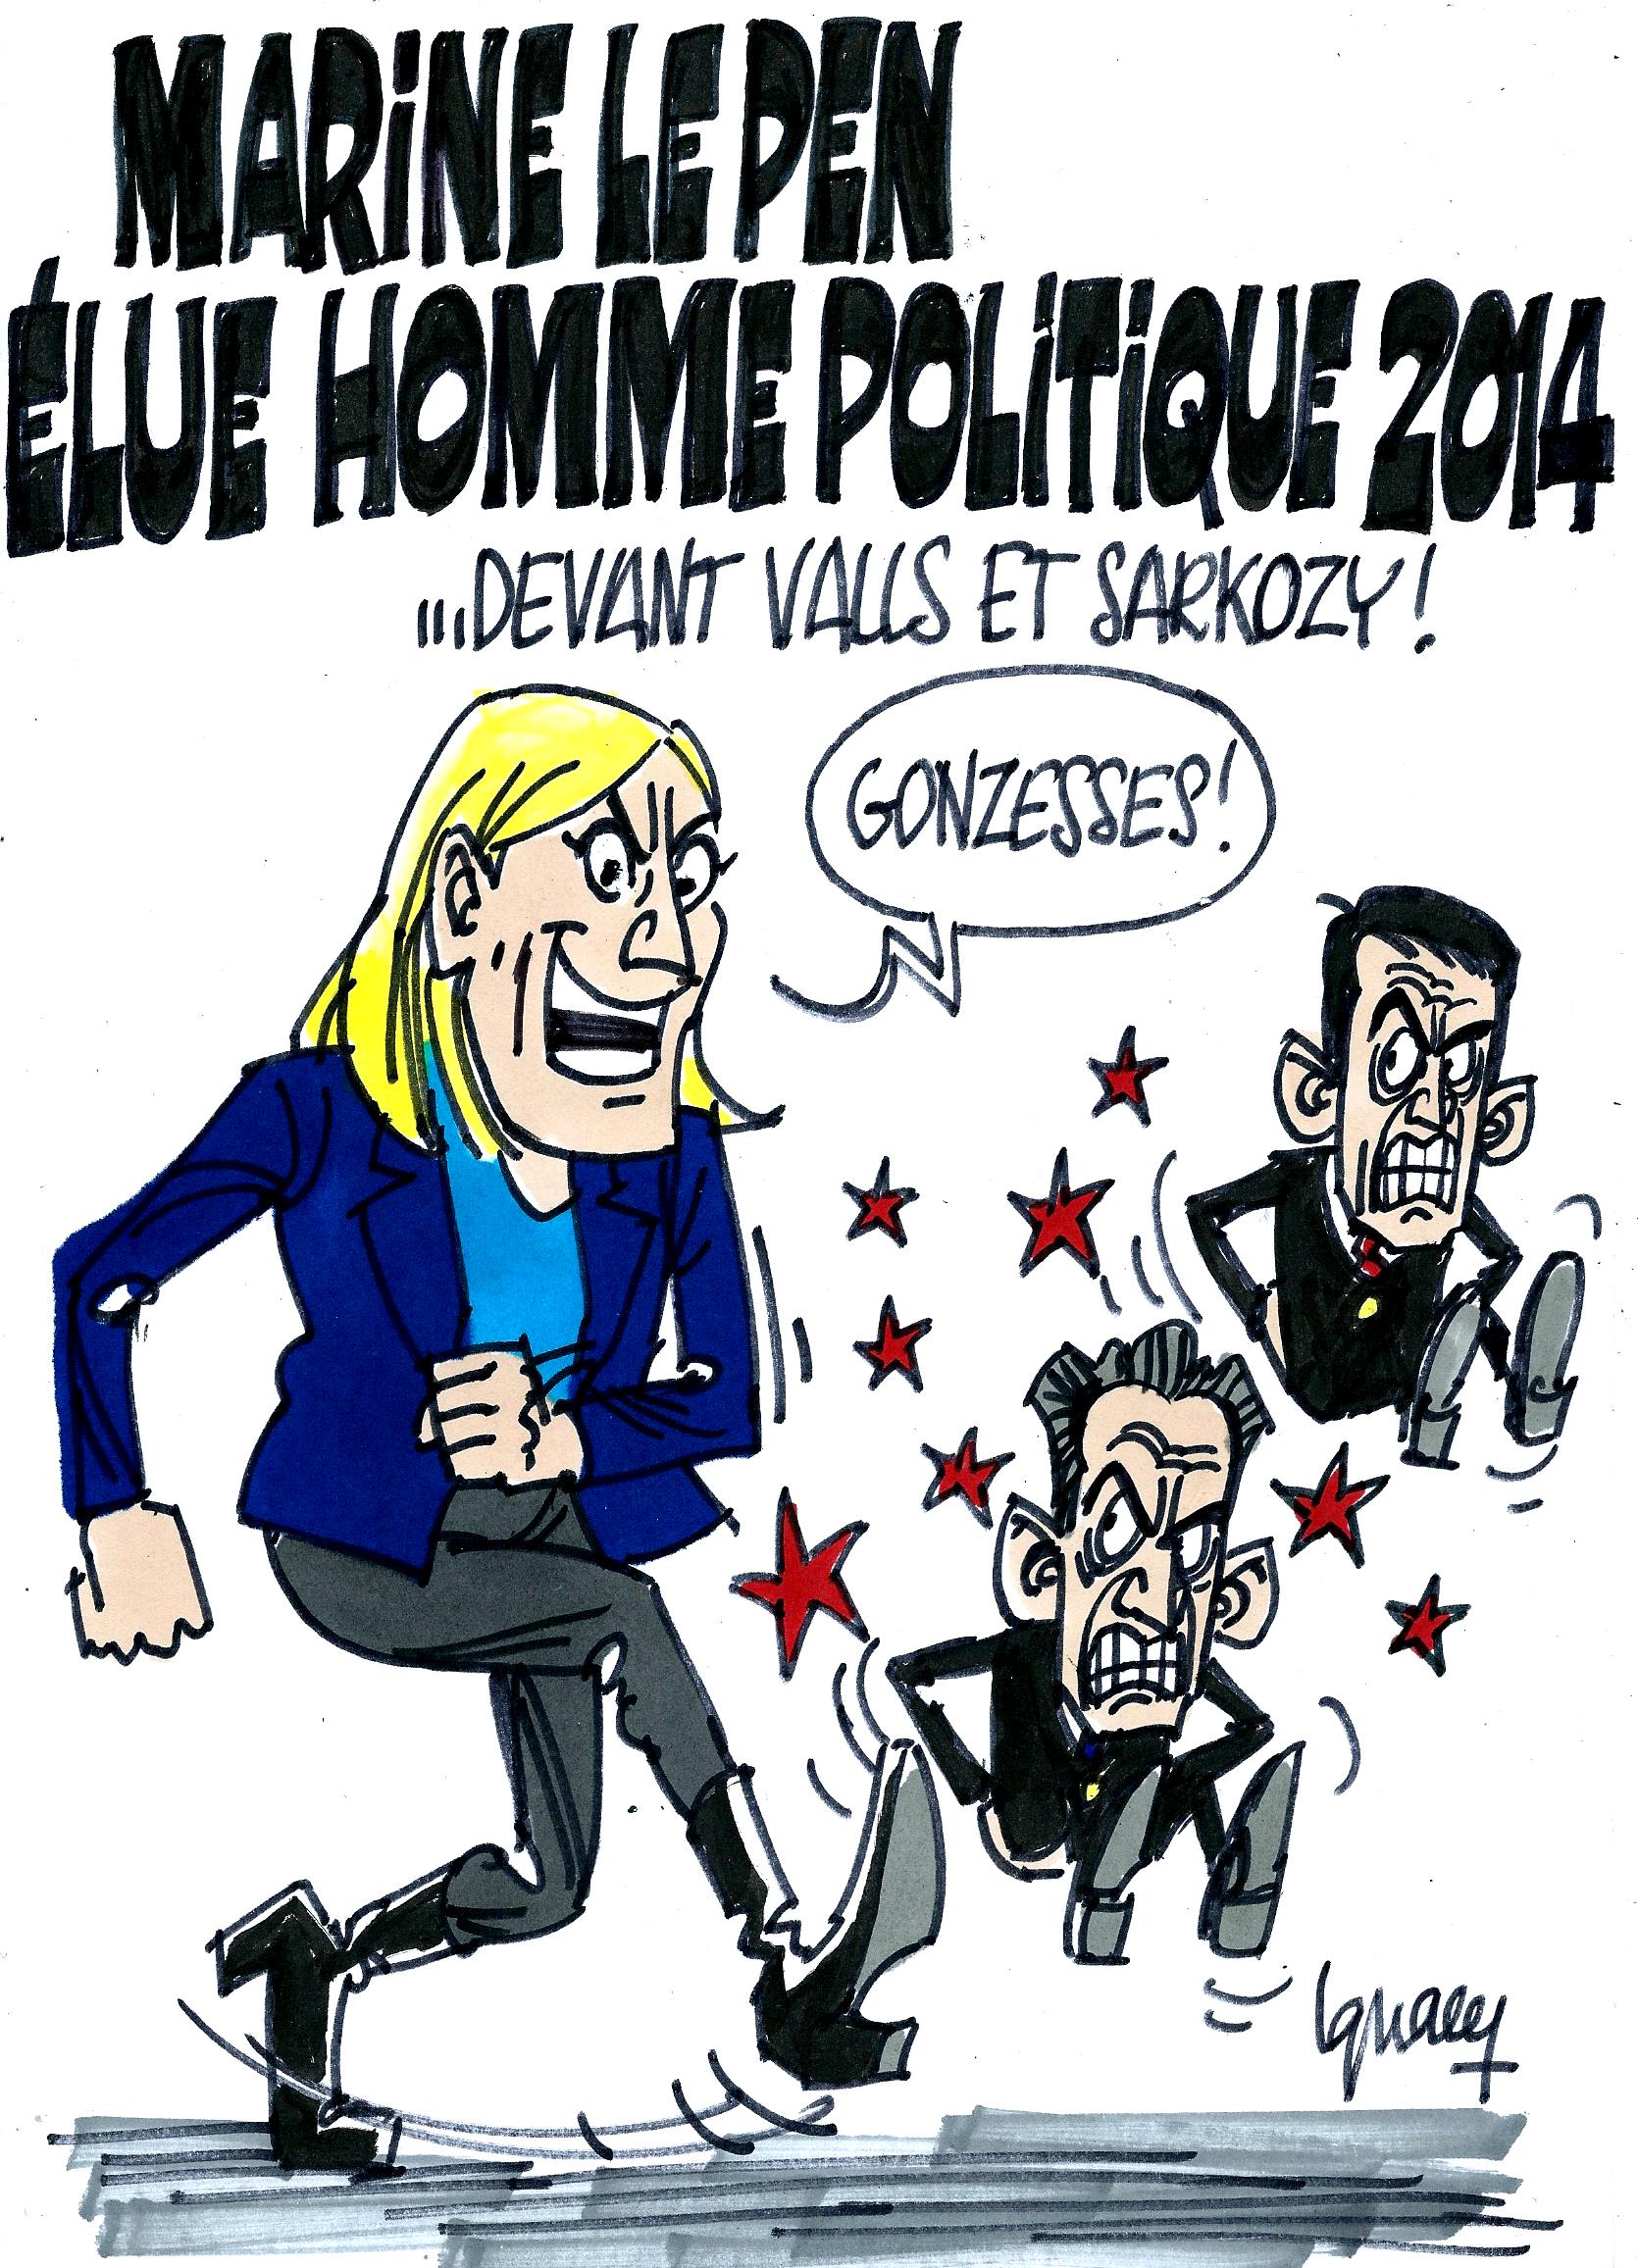 Ignace - Marine Le Pen, homme politique de l'année